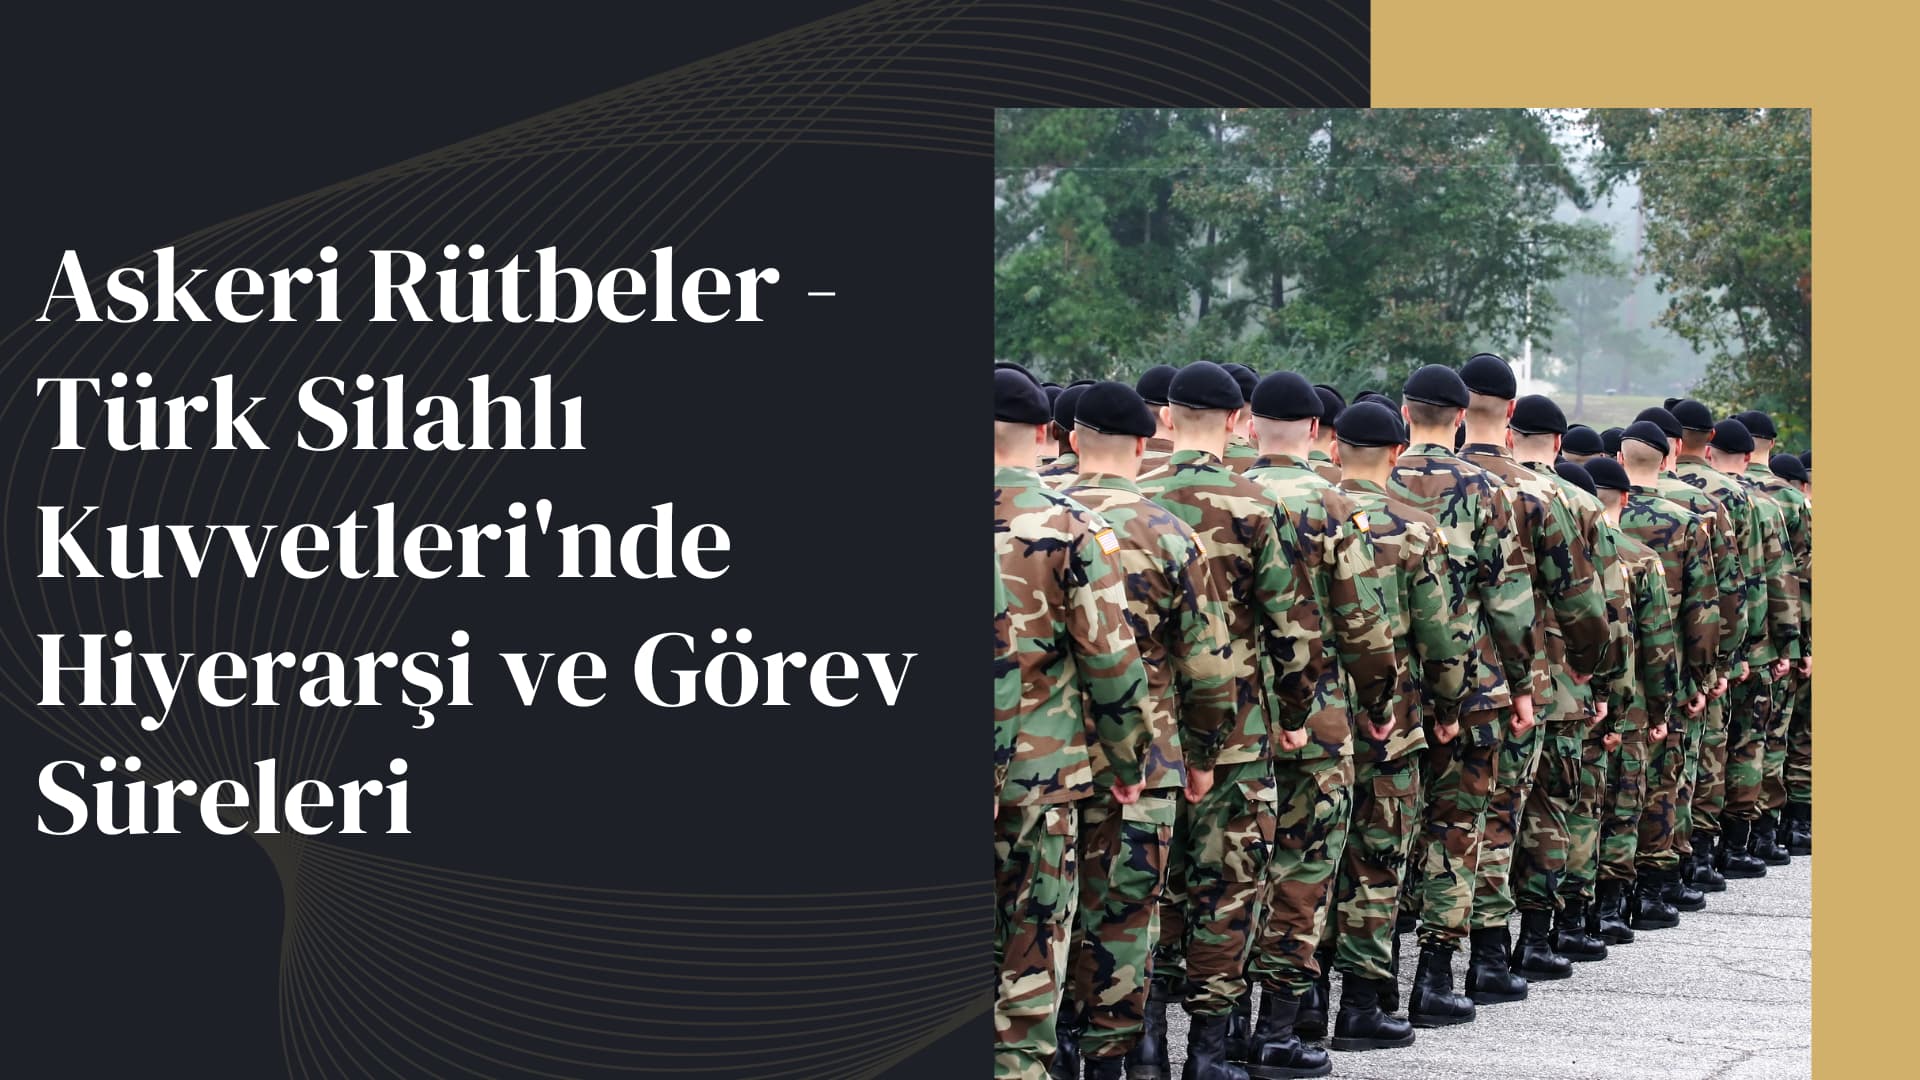 Askeri Rütbeler - Türk Silahlı Kuvvetlerinde hiyerarşi